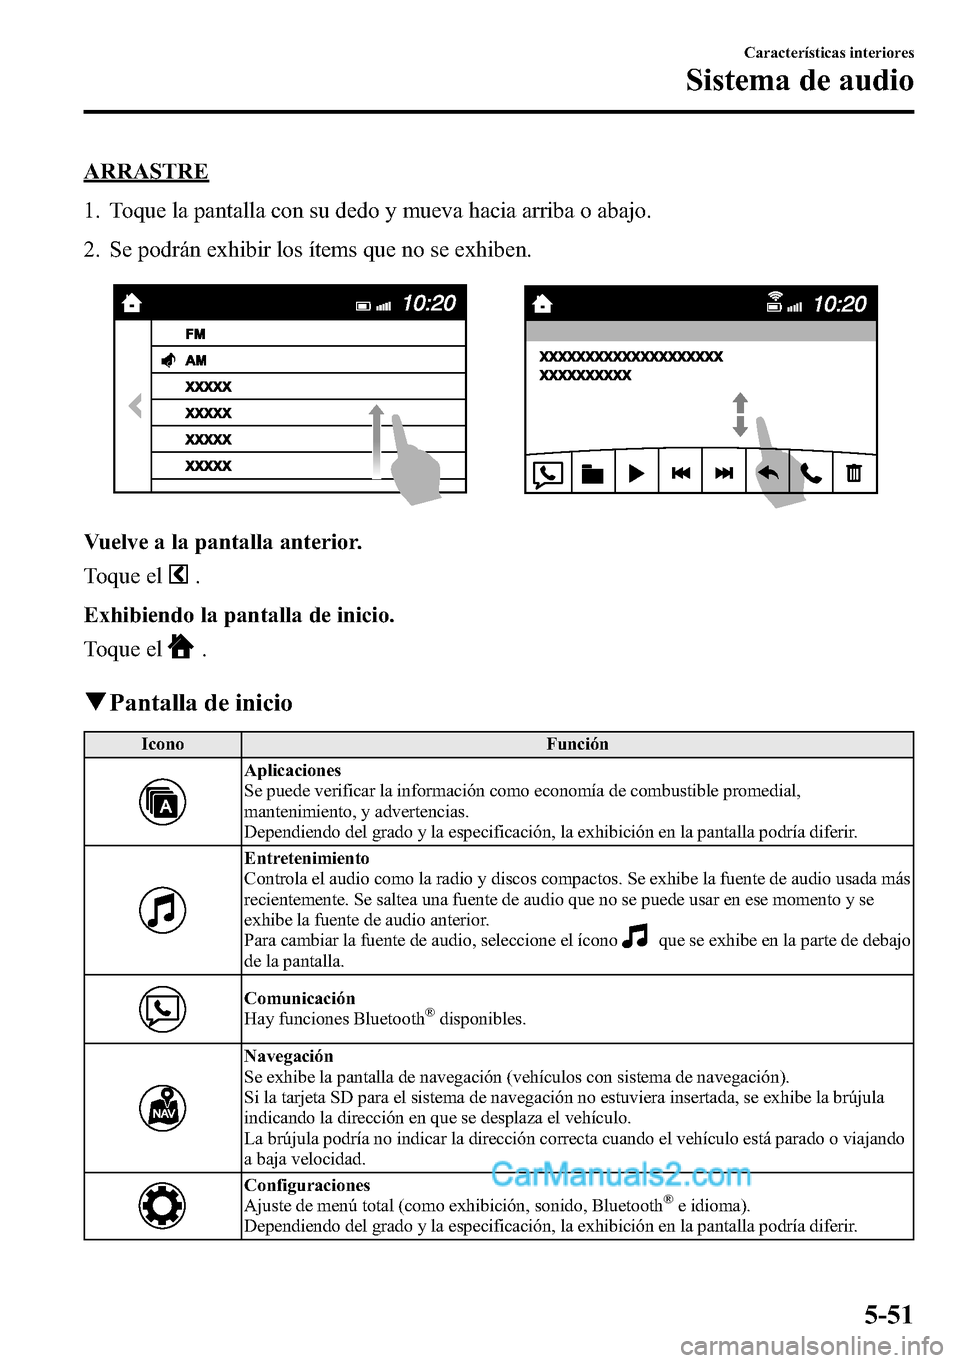 MAZDA MODEL CX-5 2016  Manual del propietario (in Spanish) ARRASTRE
1. Toque la pantalla con su dedo y mueva hacia arriba o abajo.
2. Se podrán exhibir los ítems que no se exhiben.
Vuelve a la pantalla anterior.
Toque el
.
Exhibiendo la pantalla de inicio.
